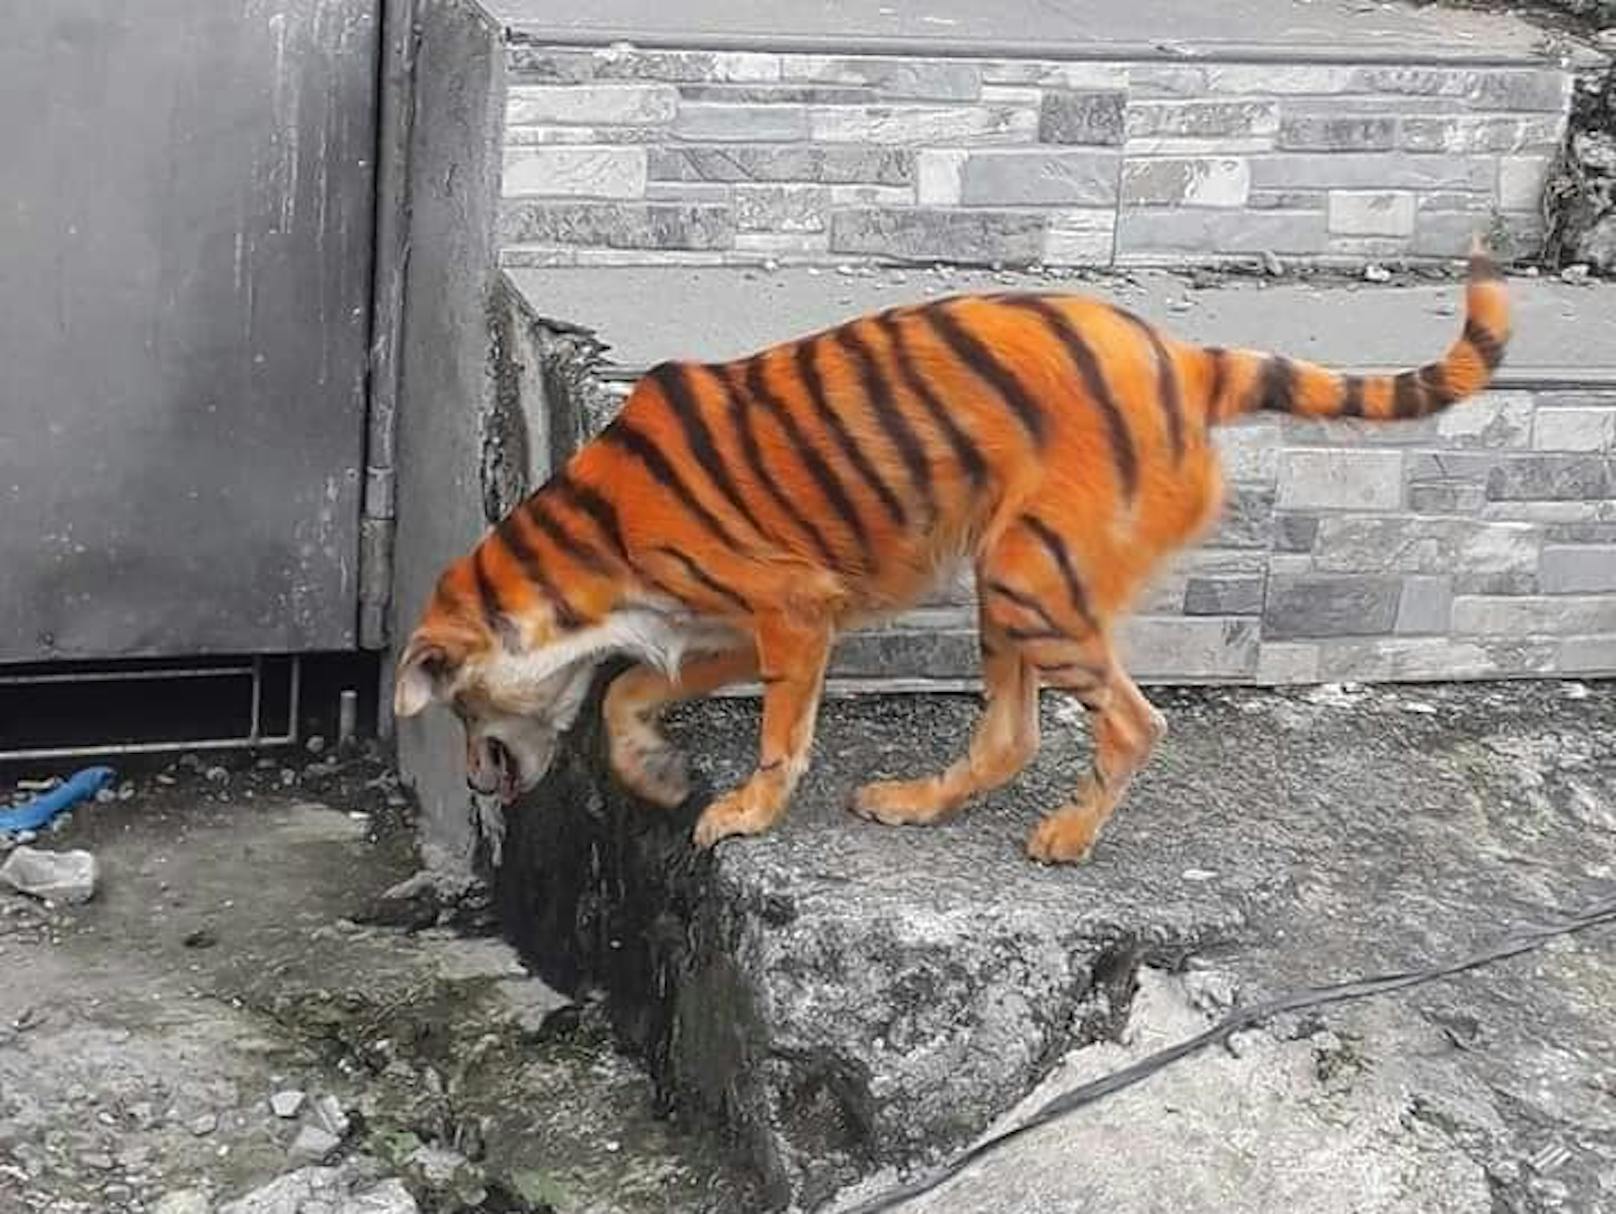 Diese Bilder sorgen für Fassungslosigkeit: Unbekannte haben in Malaysia einen Hund wie einen Tiger angemalt